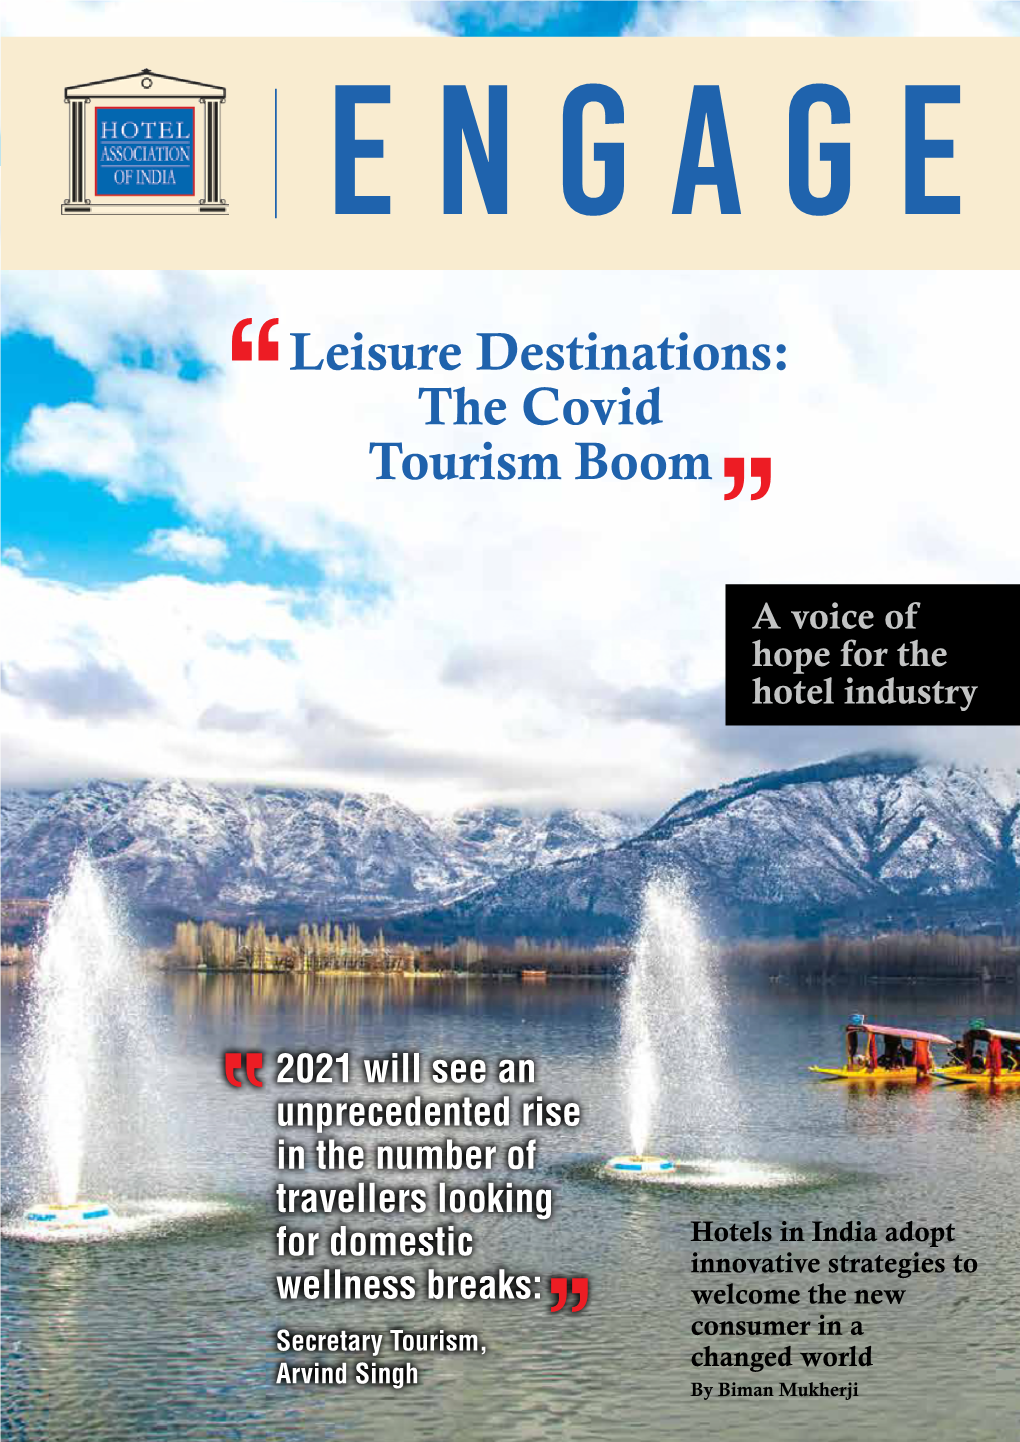 The Covid Tourism Boom